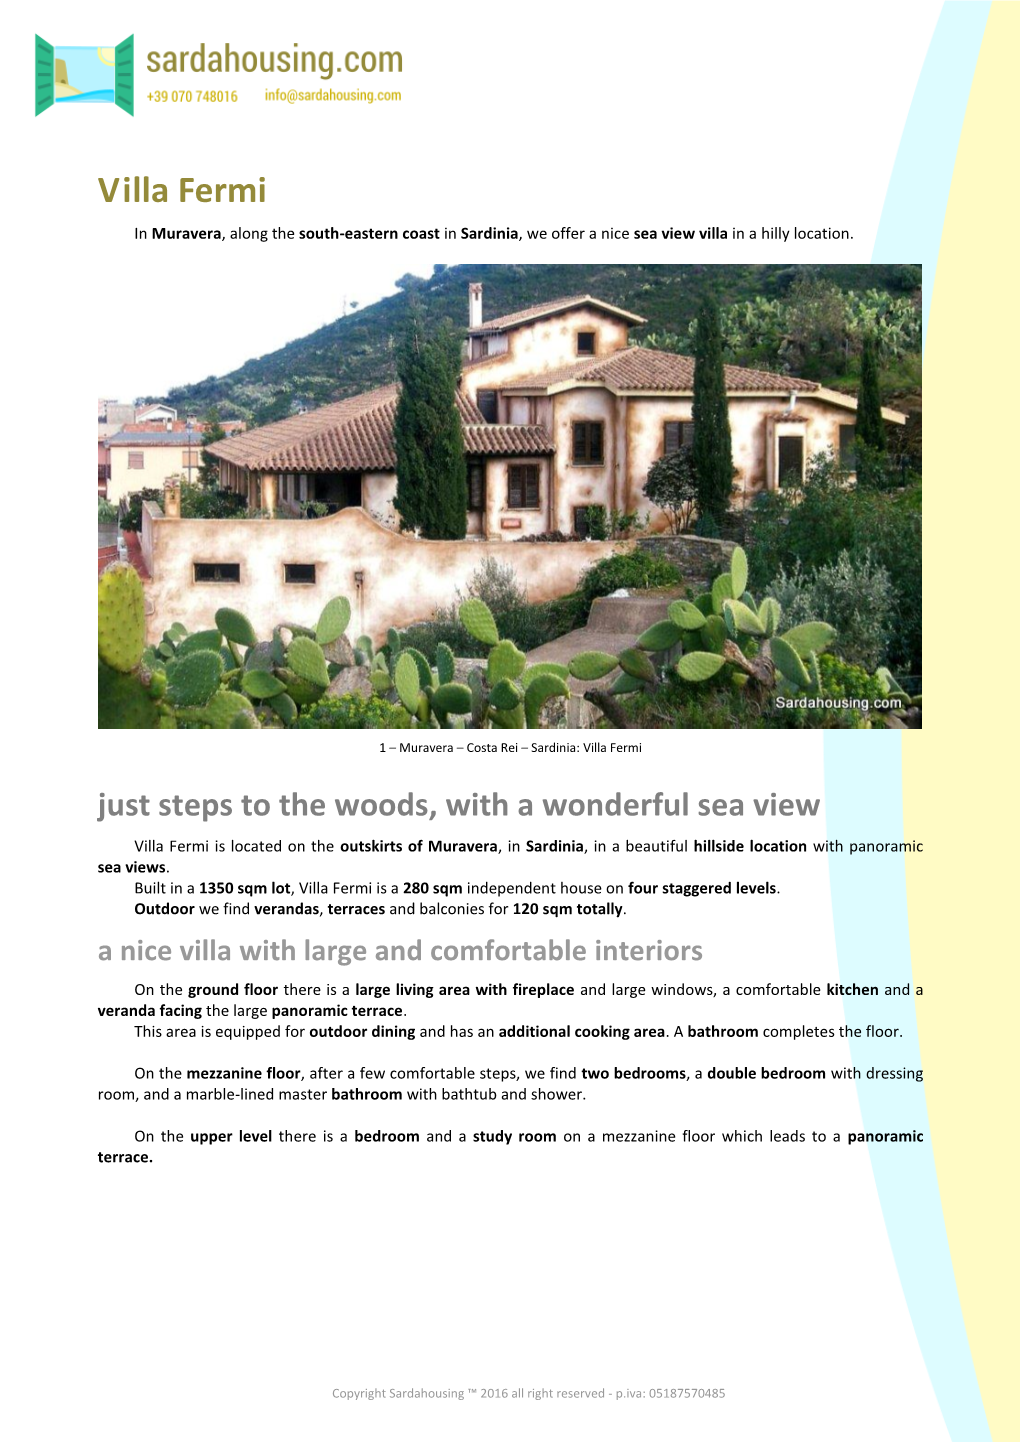 Villa Fermi for Sale in Muravera in Sardinia, Sardahousing